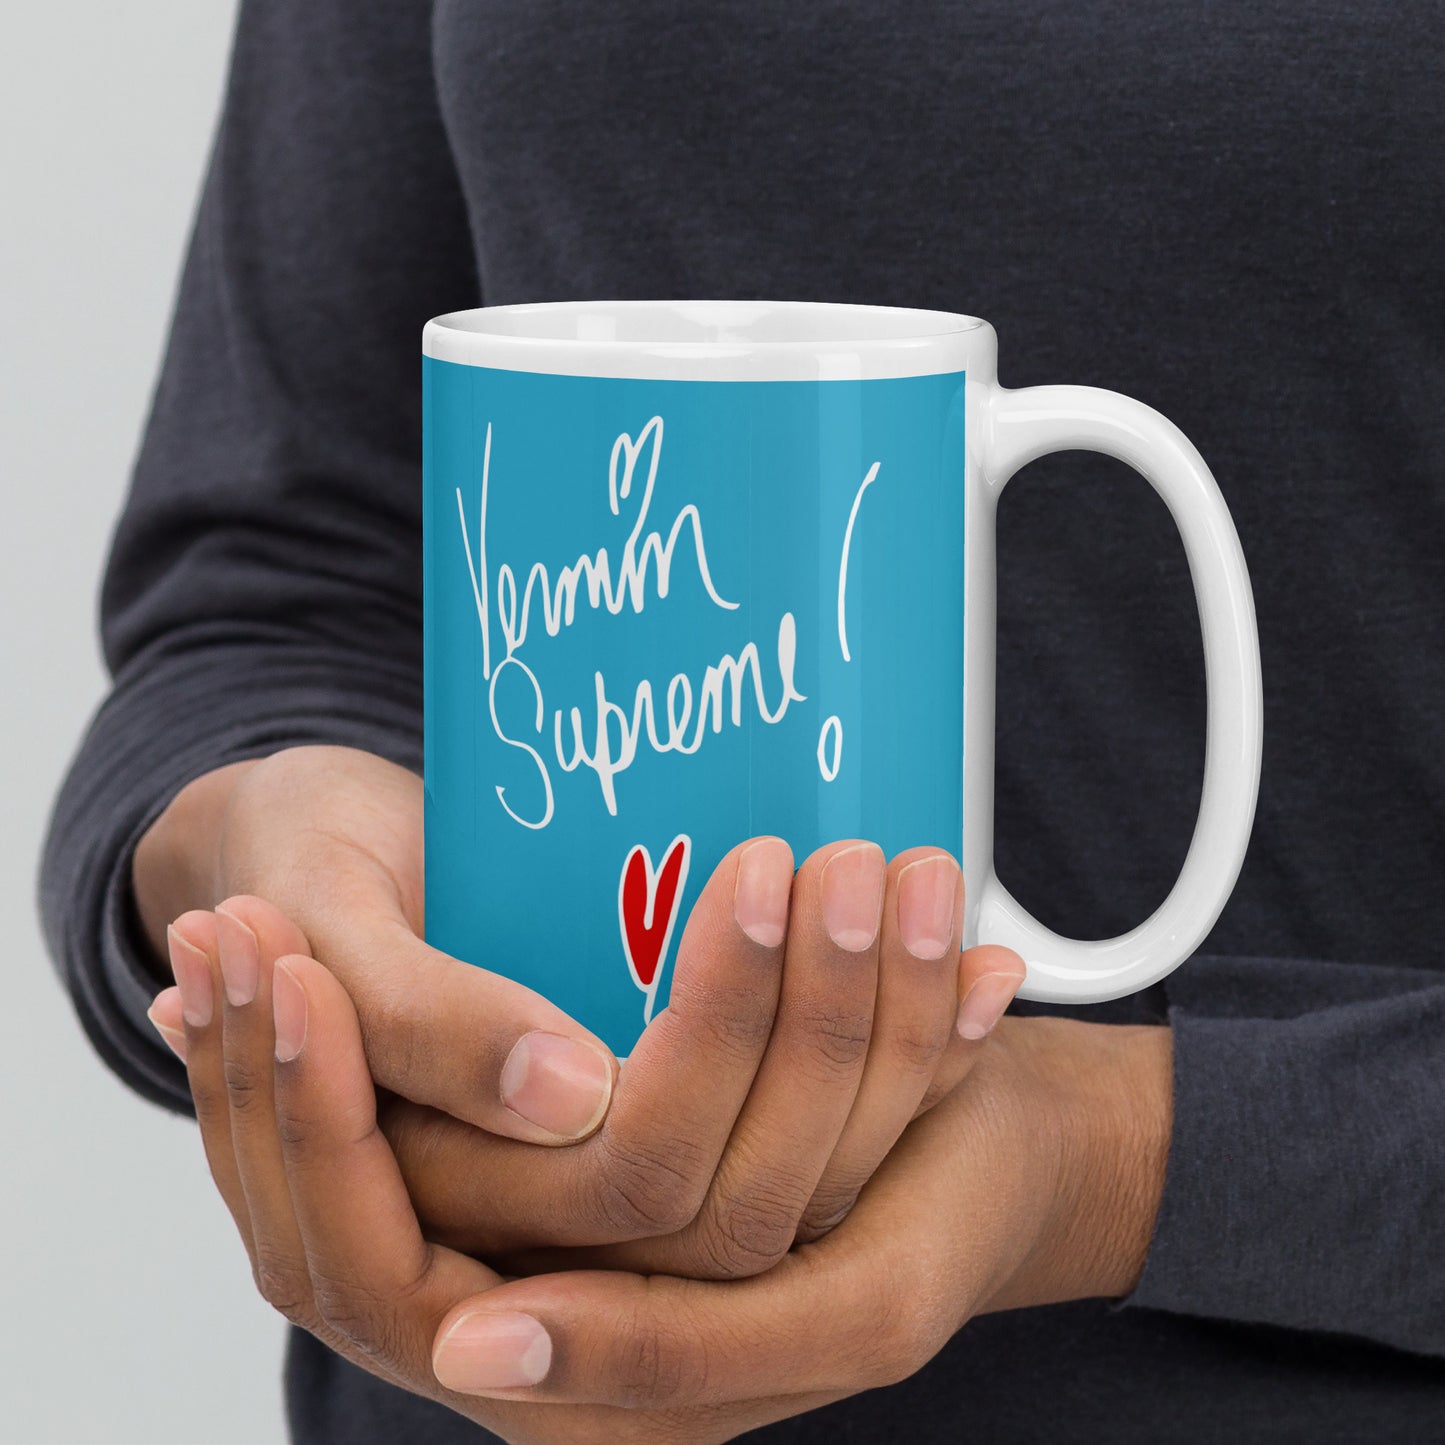 Vermin Love Supreme mug